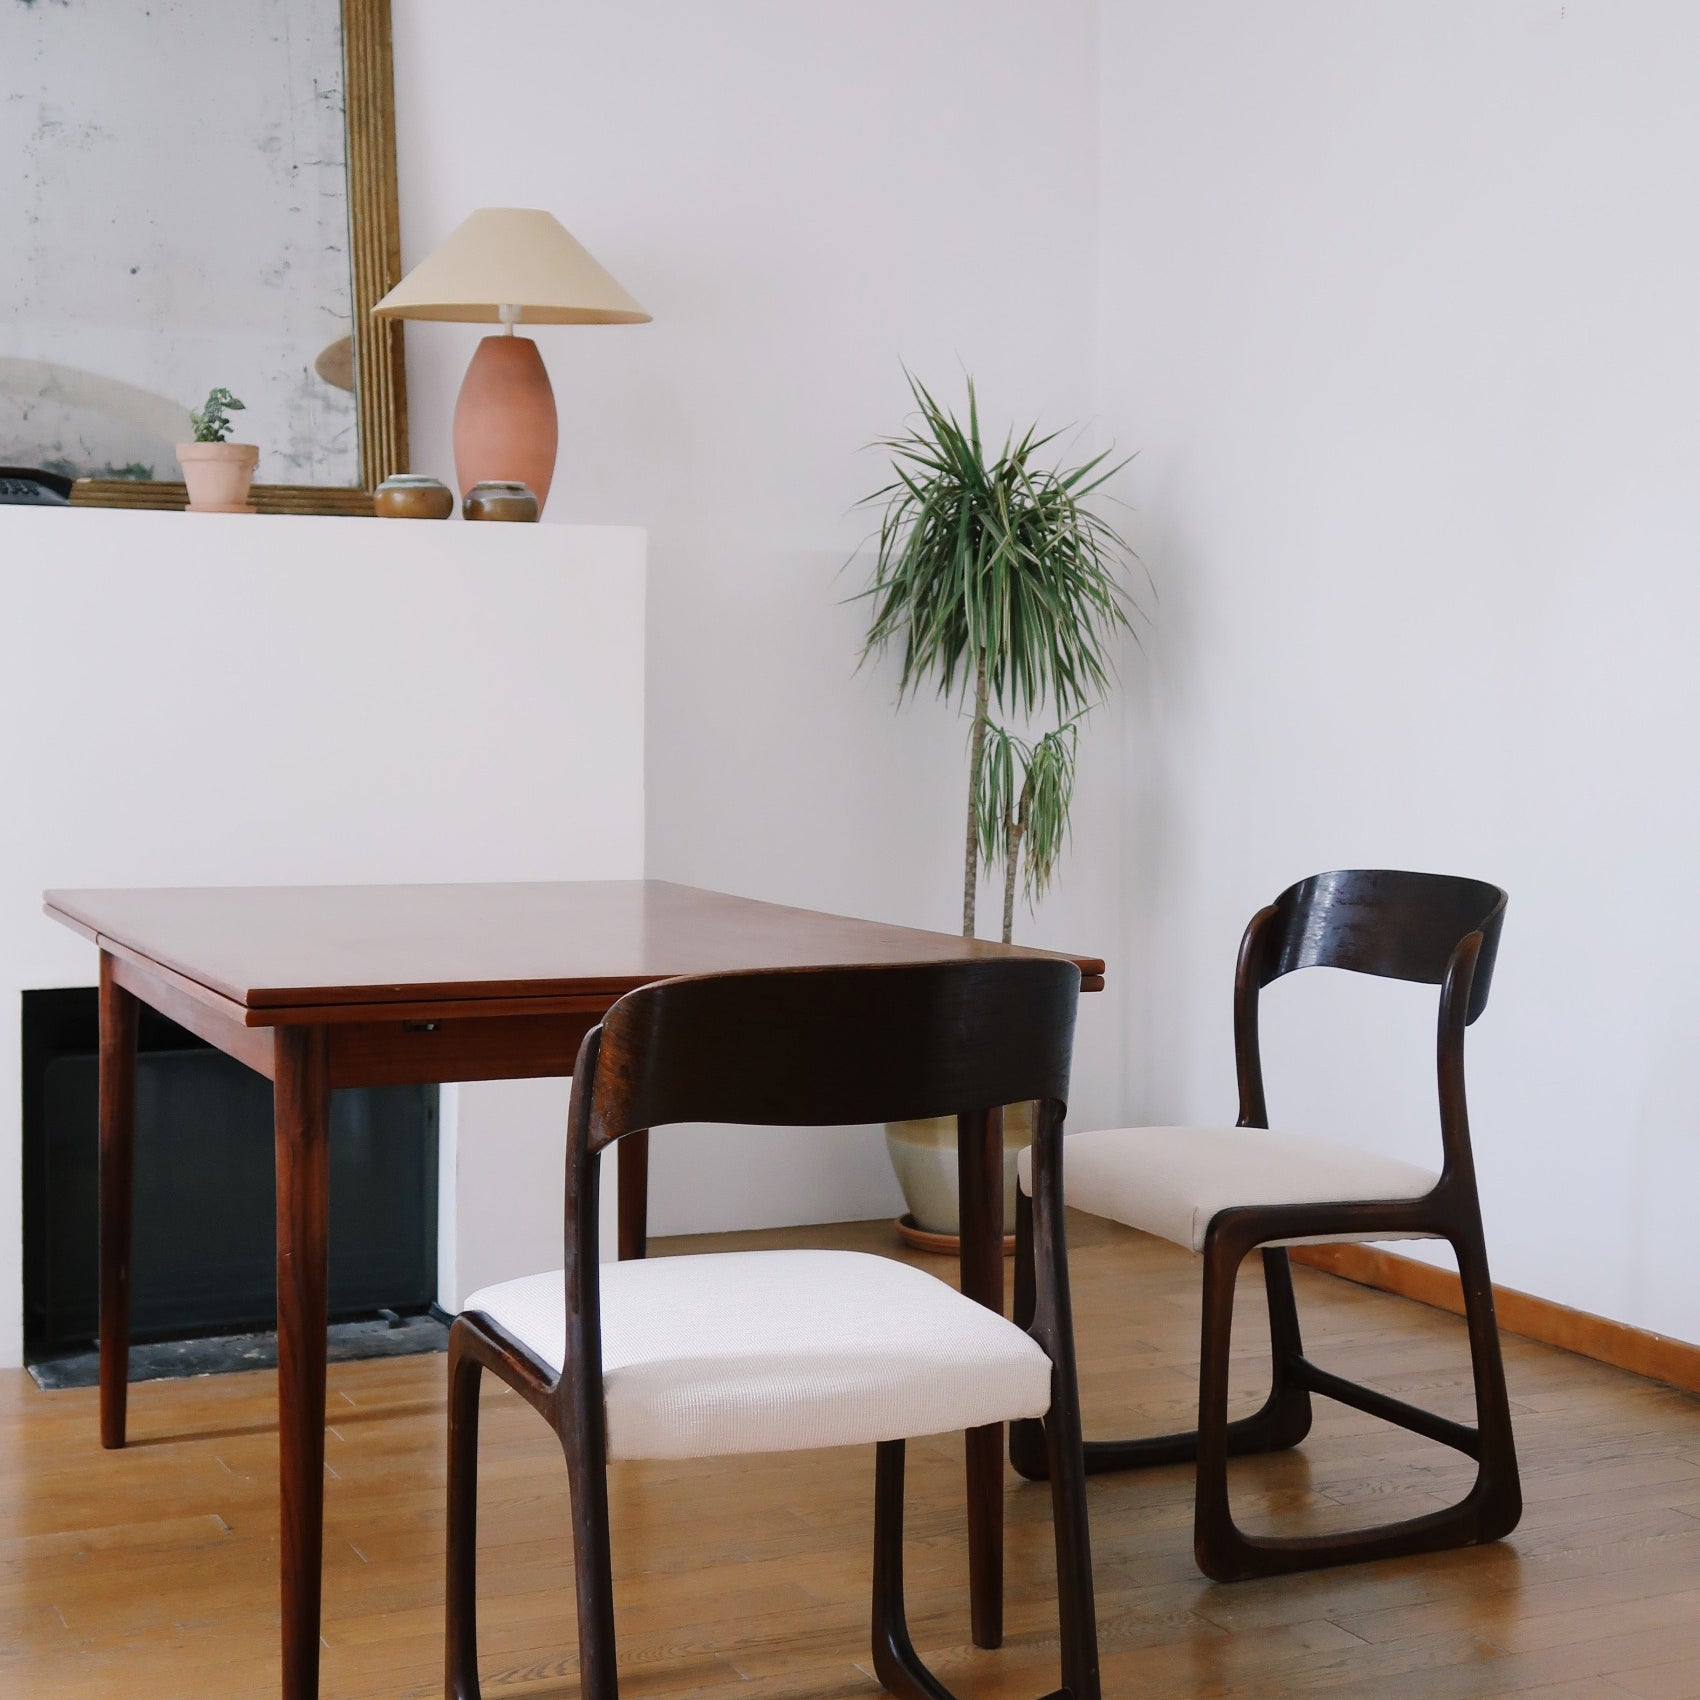 paire 2 chaises baumann traineau vintage scandinave blanc bois foncé teck tissu crème palissandre scandinave pieds compas